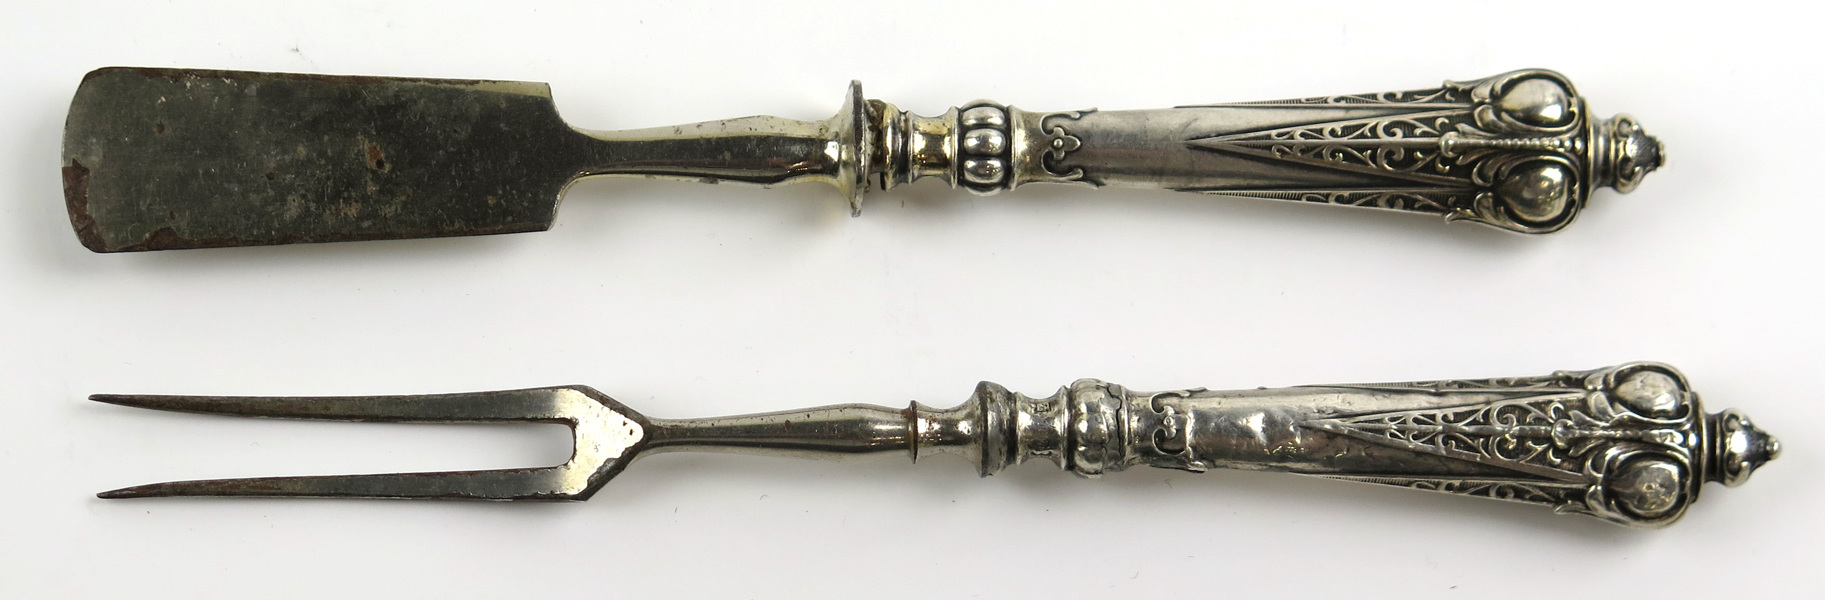 Ostkniv- och gaffel, silver med kromade blad och tenar, _14174a_8d99a312ab8e7b1_lg.jpeg